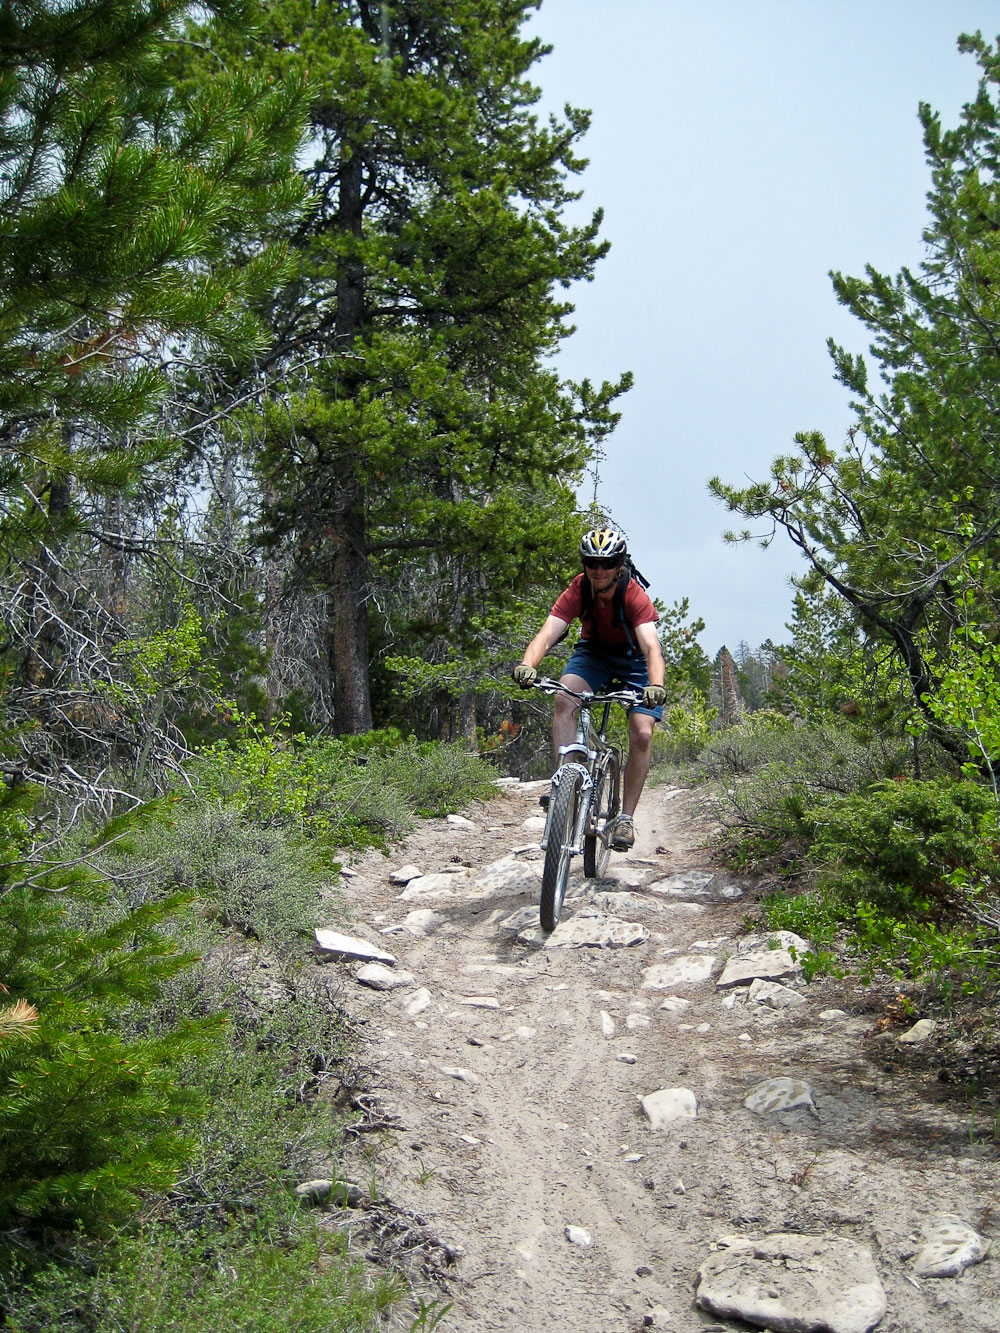 Mountain biking through the trees down a mountain trail with rocks